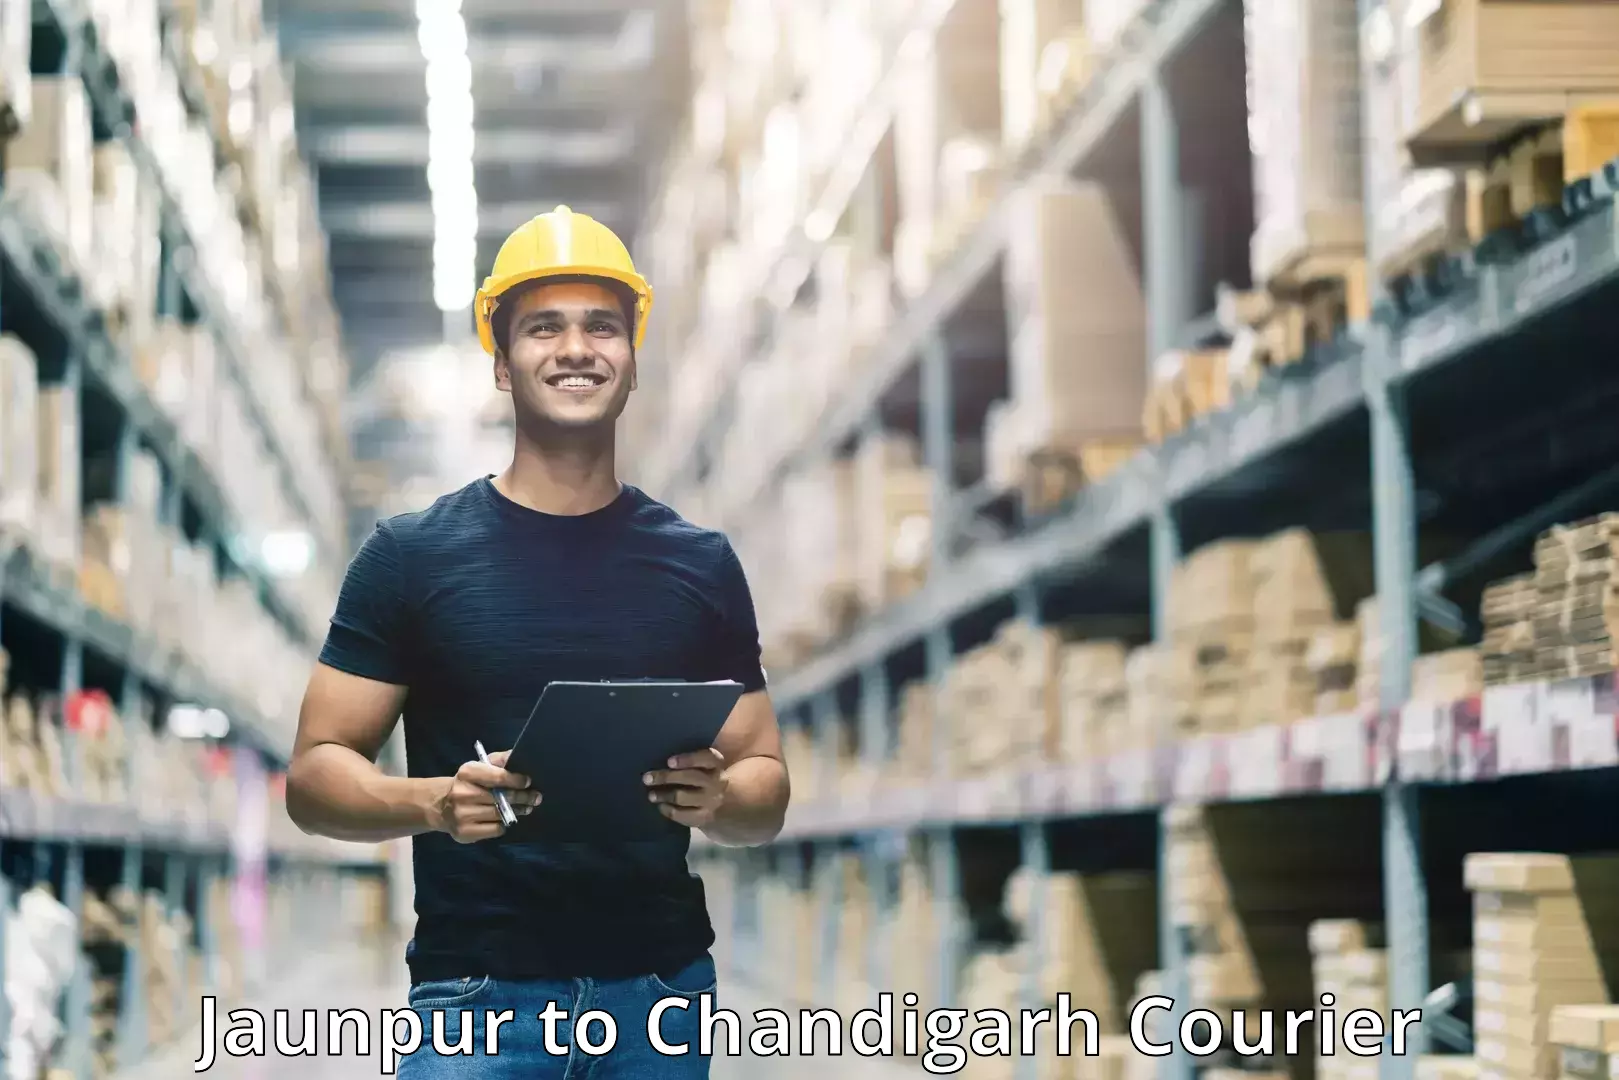 Smart shipping technology Jaunpur to Panjab University Chandigarh